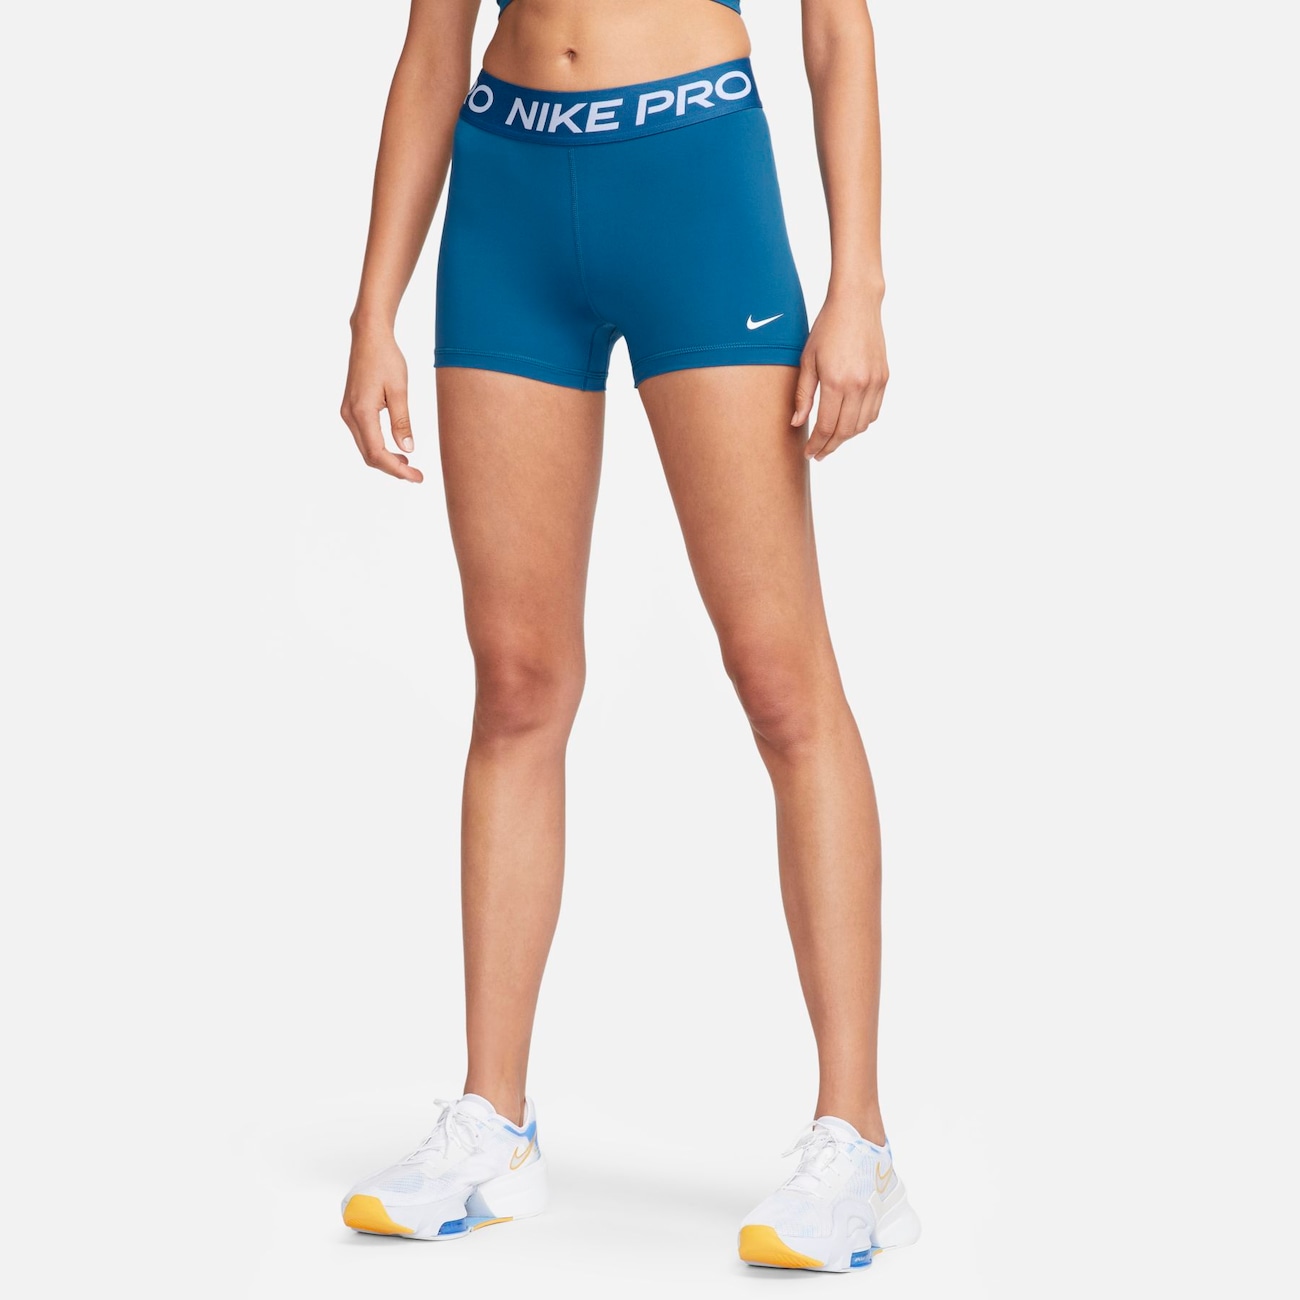 Conjunto Nike Pro Feminino - Compre Online